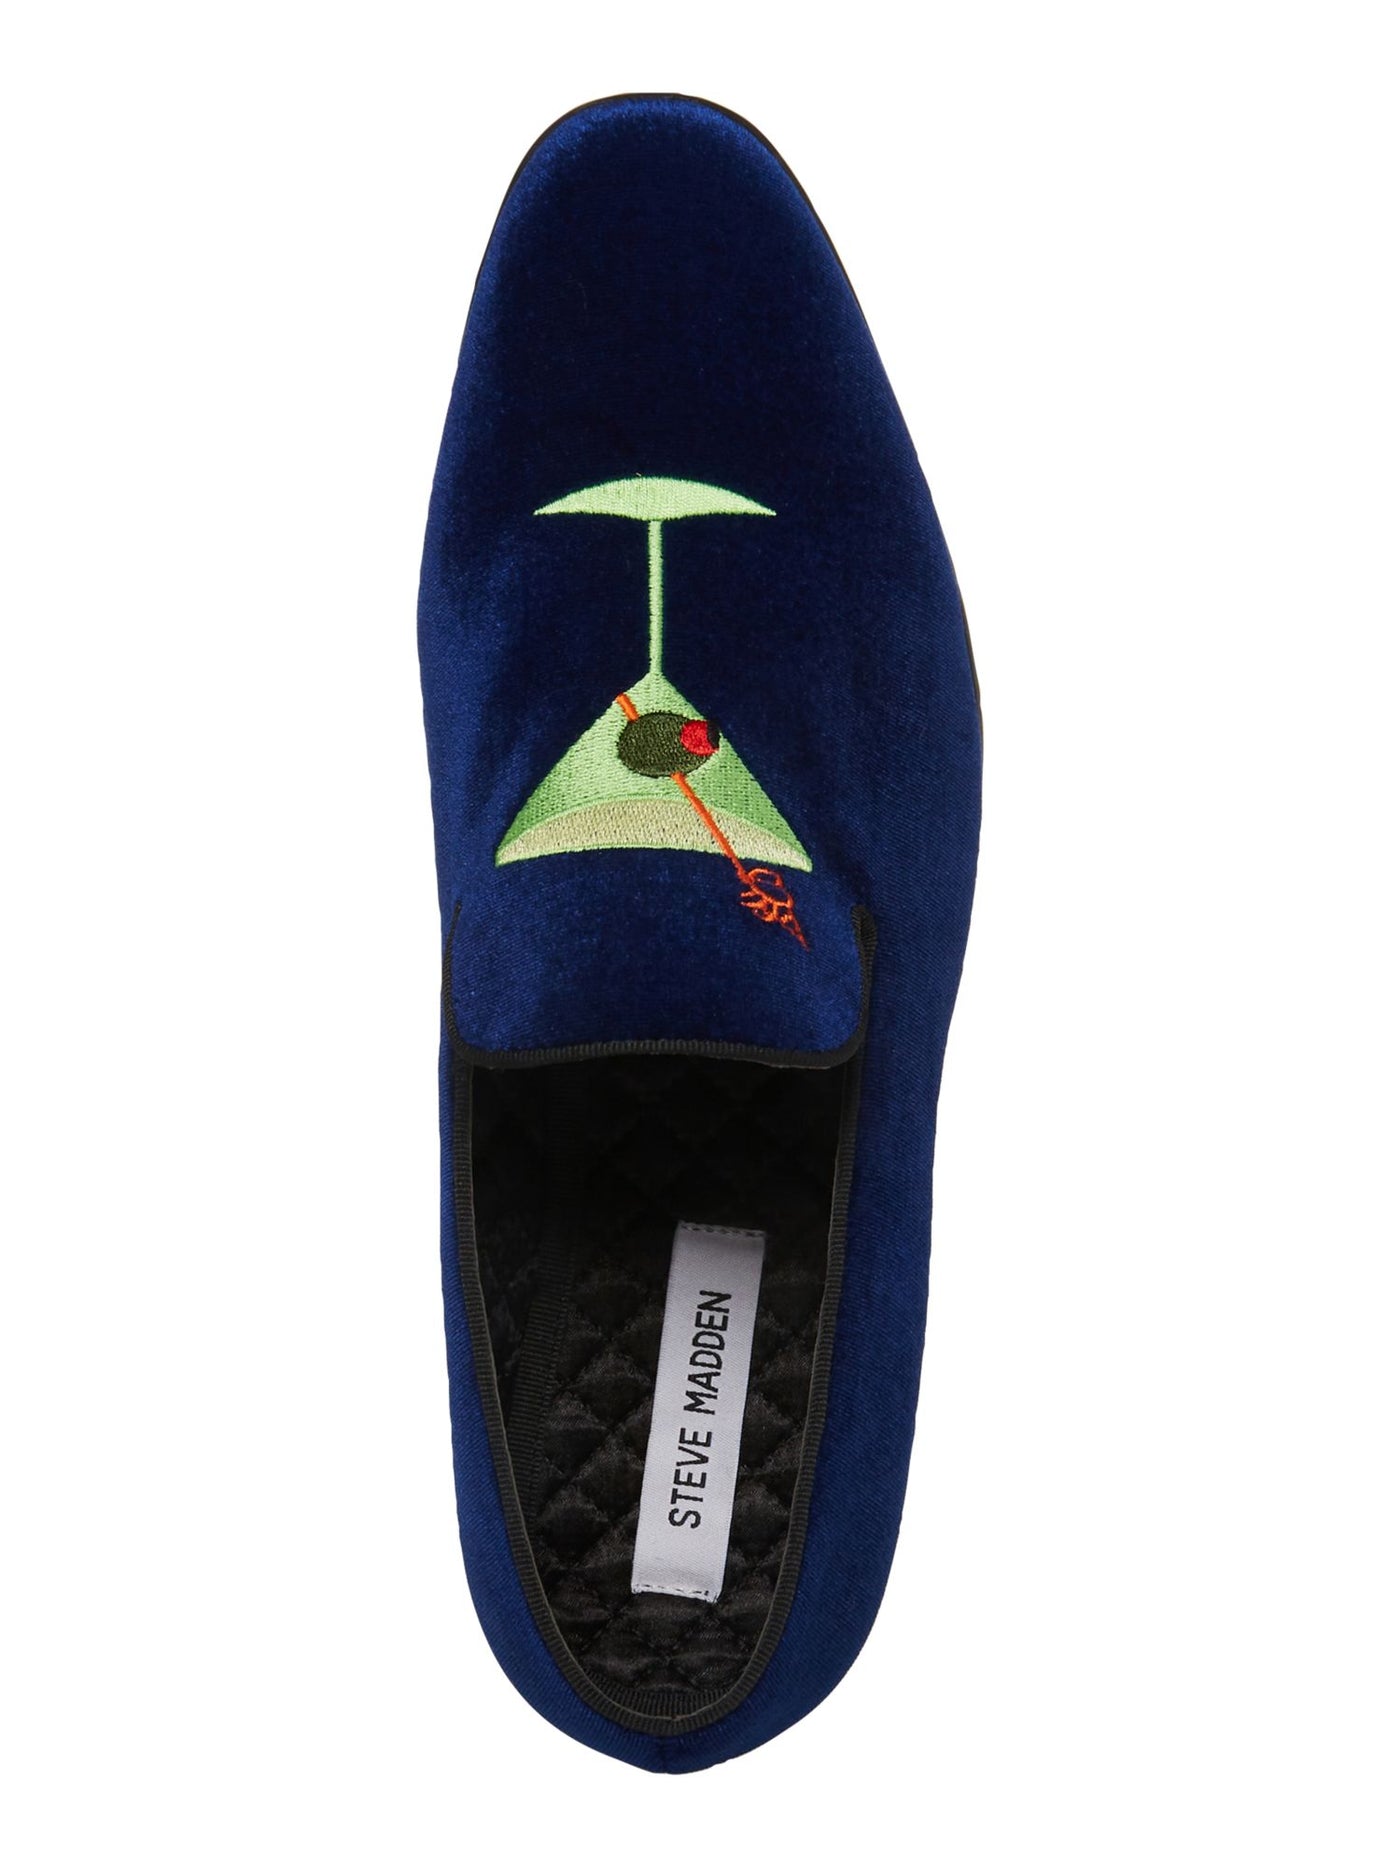 STEVE MADDEN Mens Blue Smoking Embroidered Martini Almond Toe Slip On Velvet Slippers Shoes 7.5 M